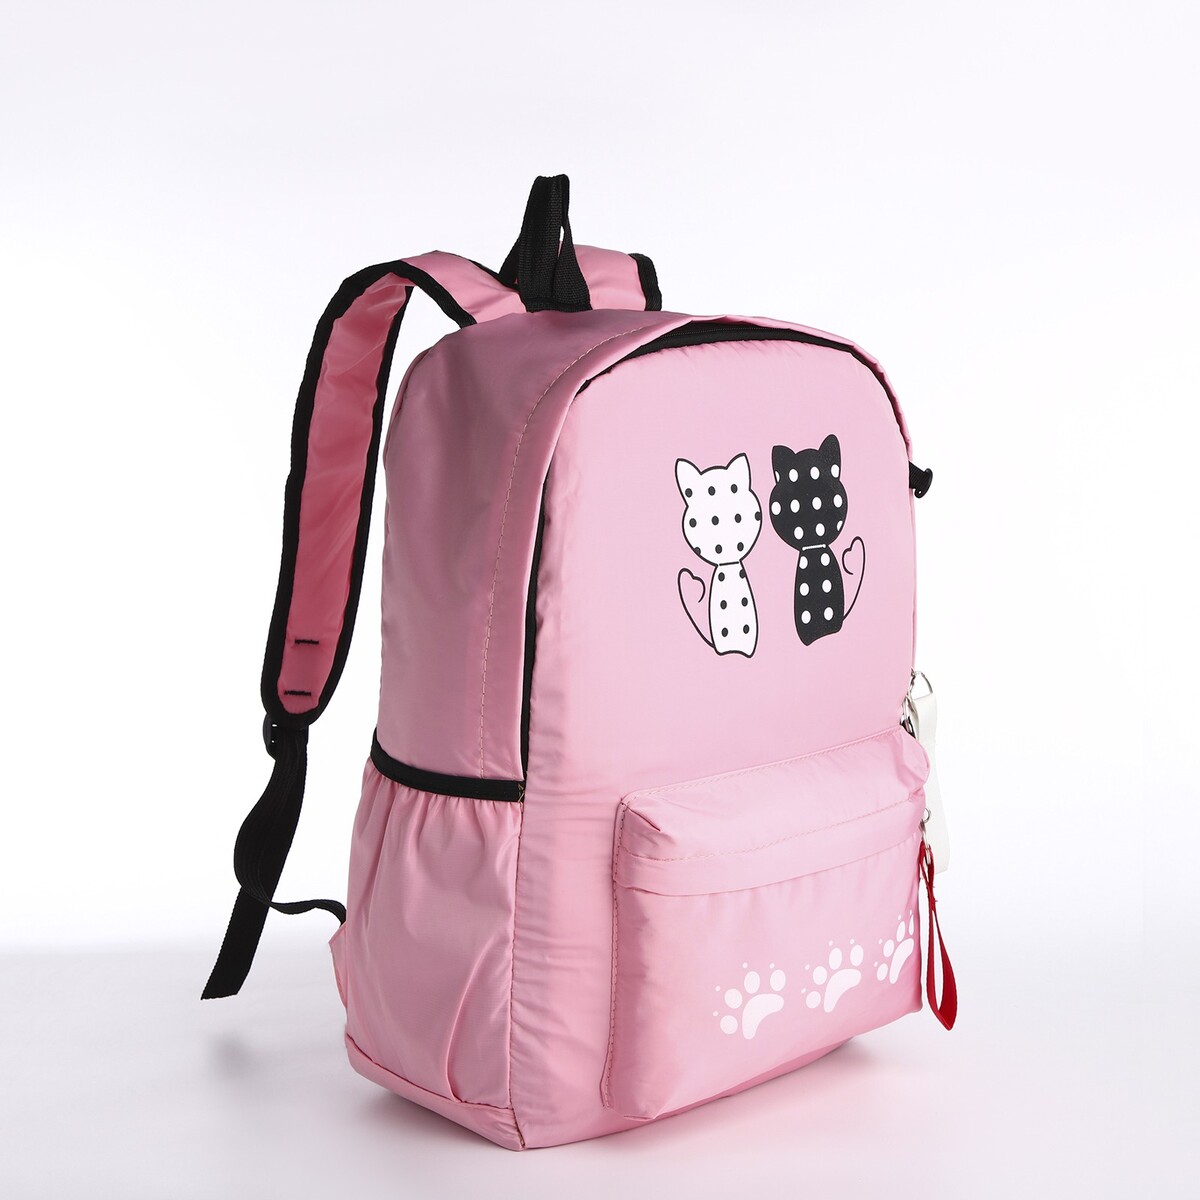 Рюкзак молодежный из текстиля, 3 кармана, кошелек, цвет розовый